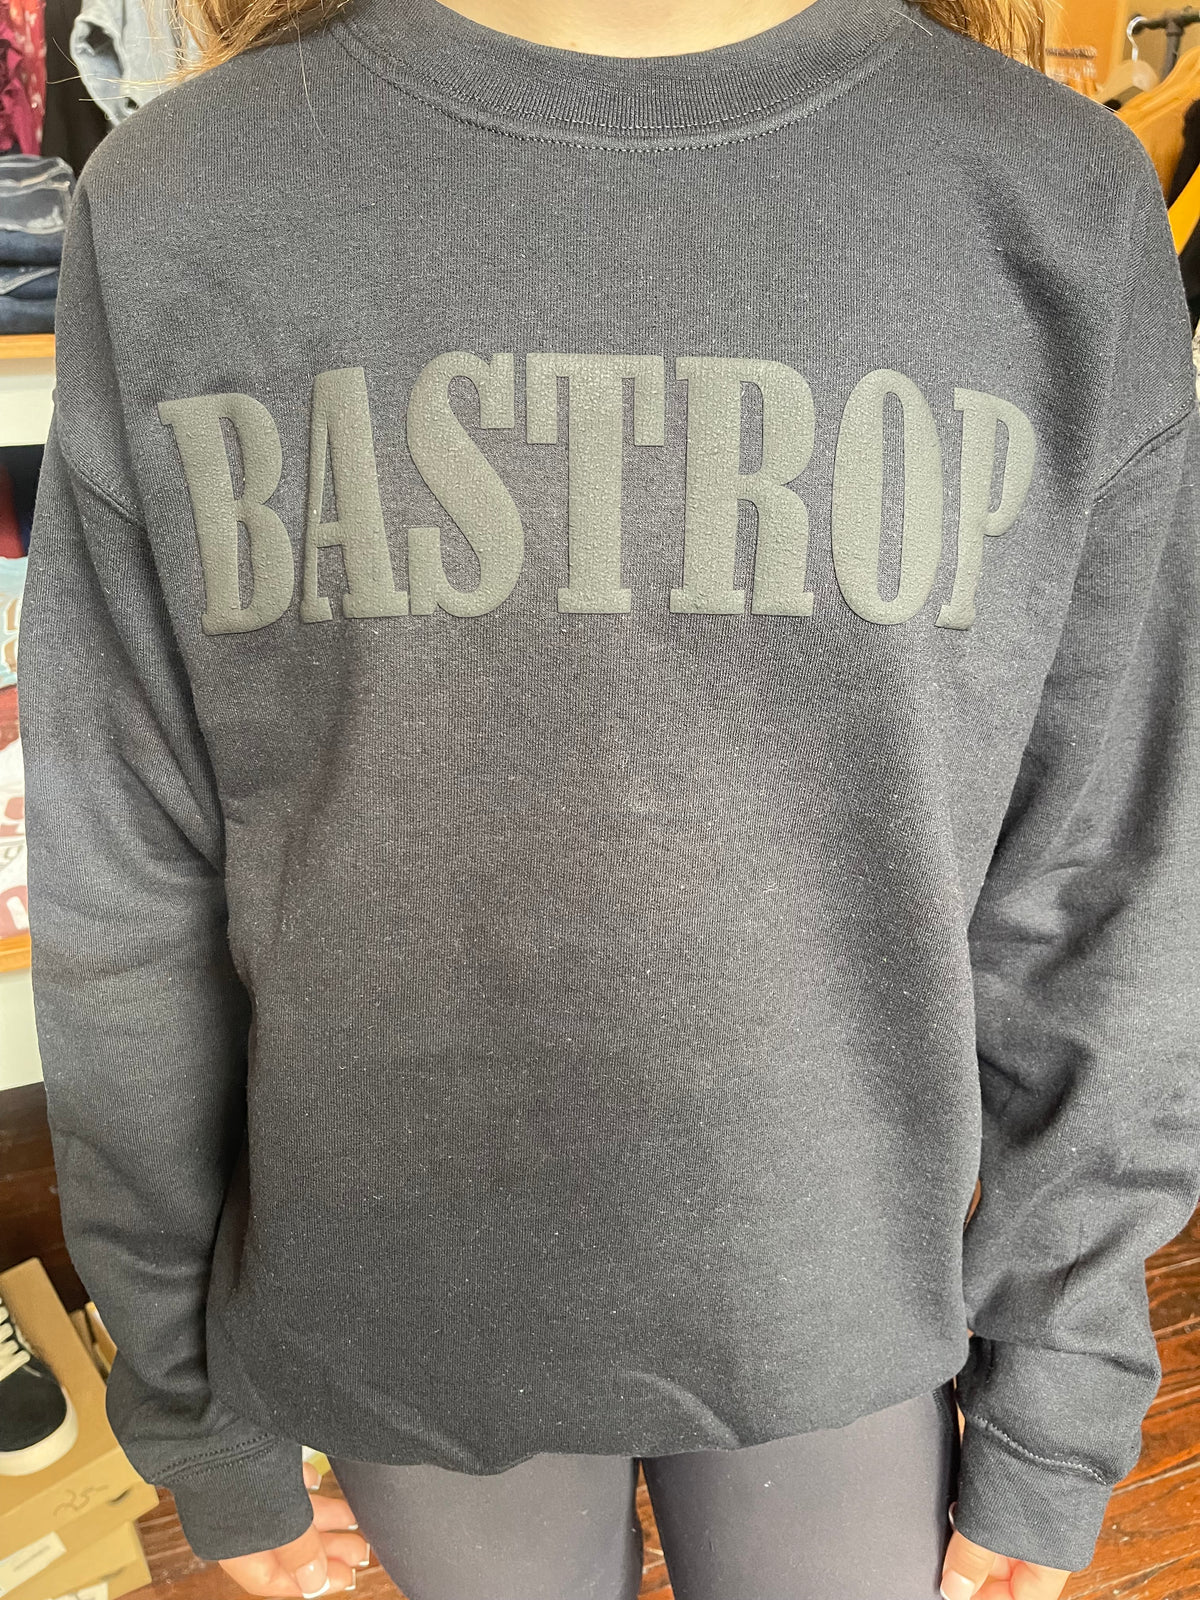 Black Bastrop Sweatshirt